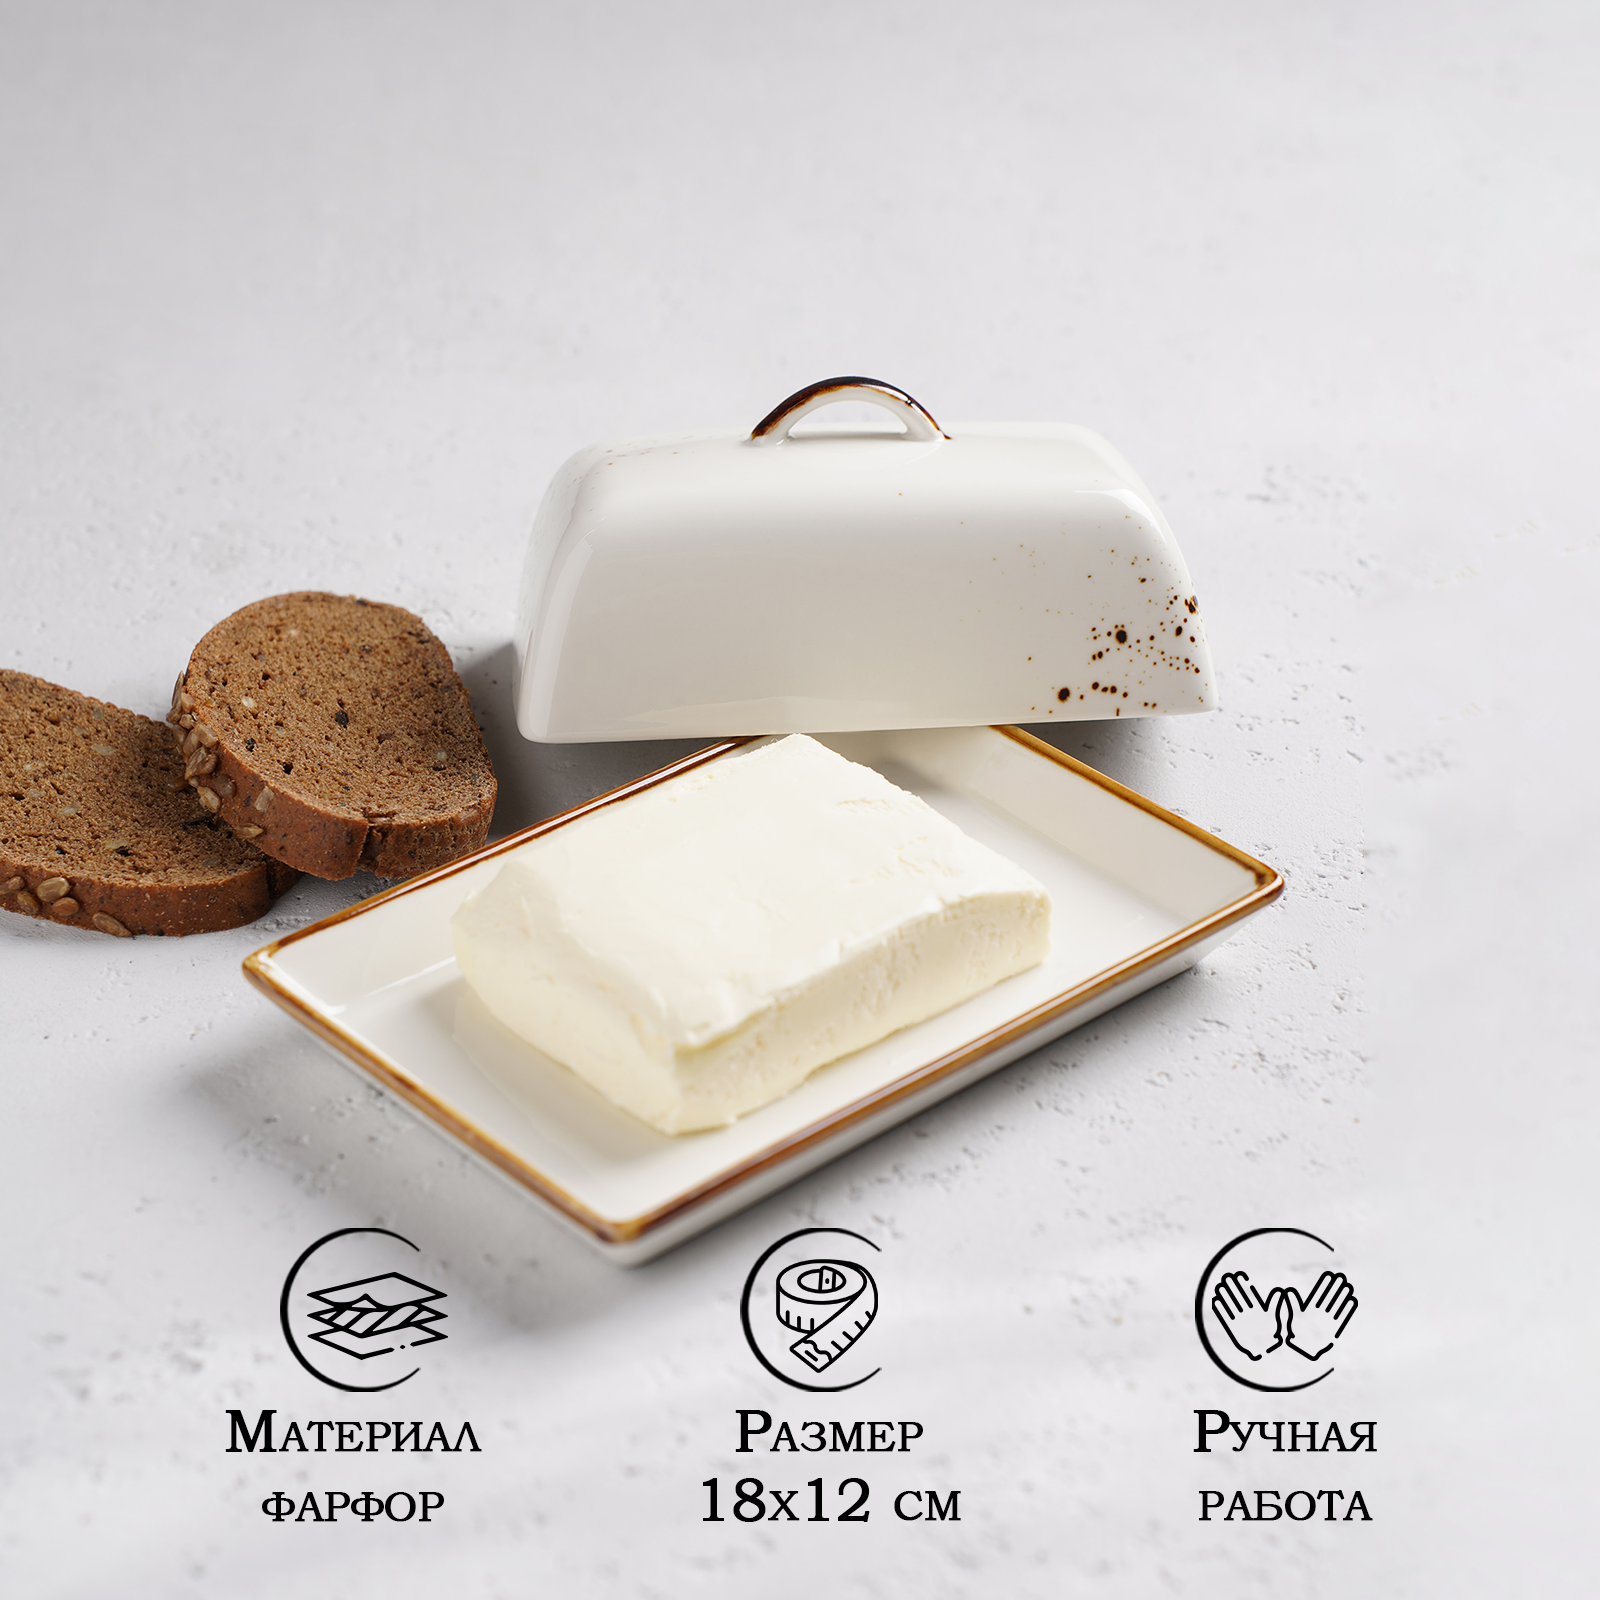 Масленка для сливочного масла Magistro «Церера» фарфоровая цвет белый